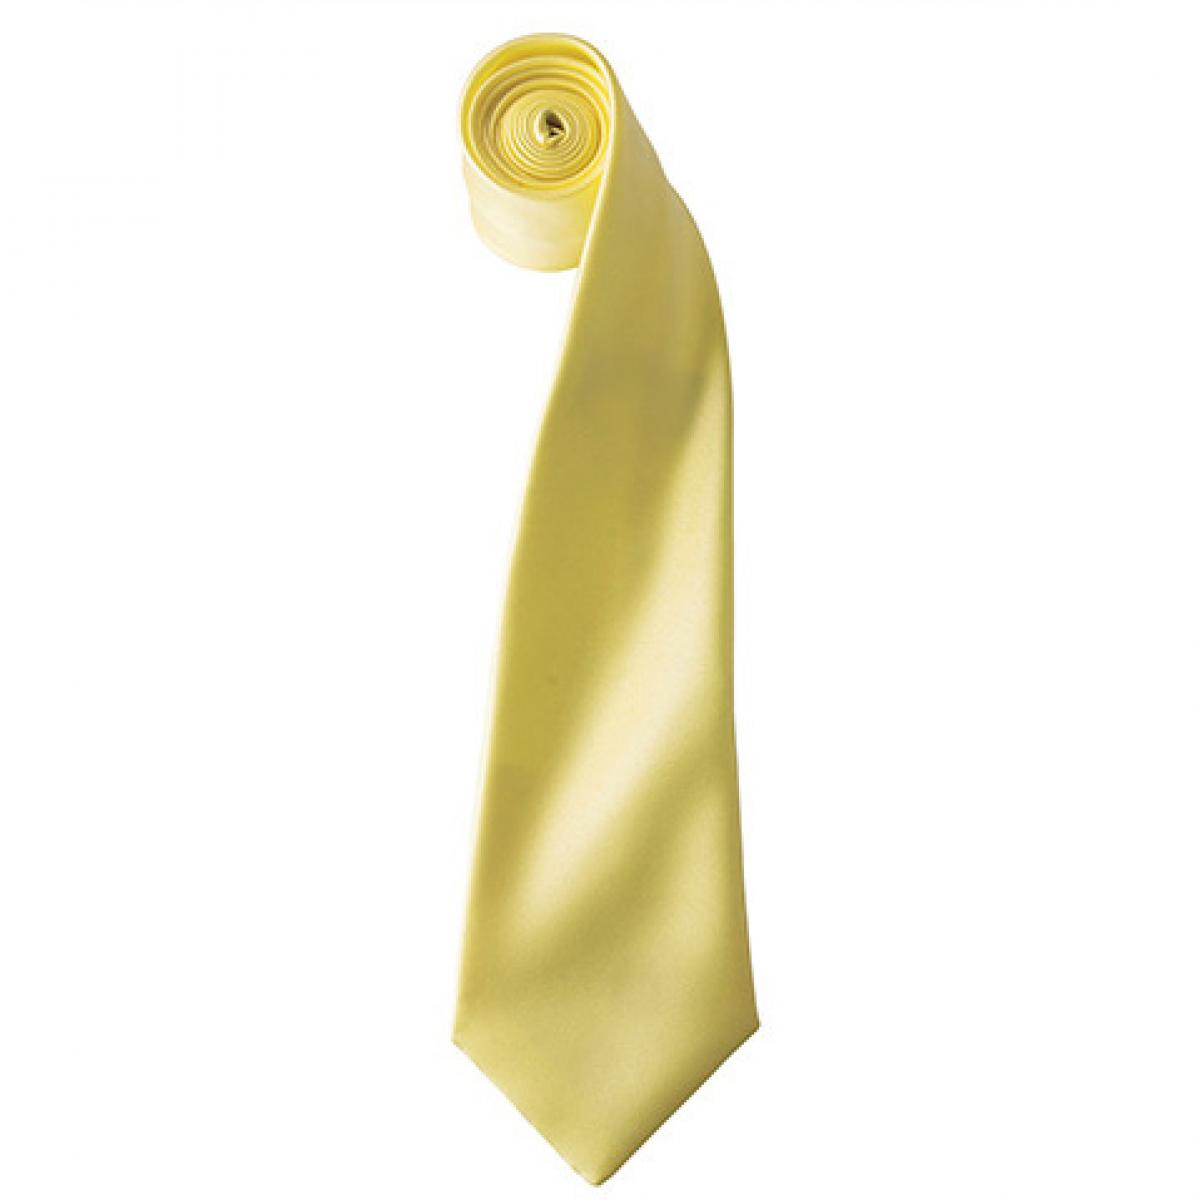 Hersteller: Premier Workwear Herstellernummer: PR750 Artikelbezeichnung: Satin Tie ´Colours´ / 144 x 8,5 cm Farbe: Lemon (ca. Pantone 127)